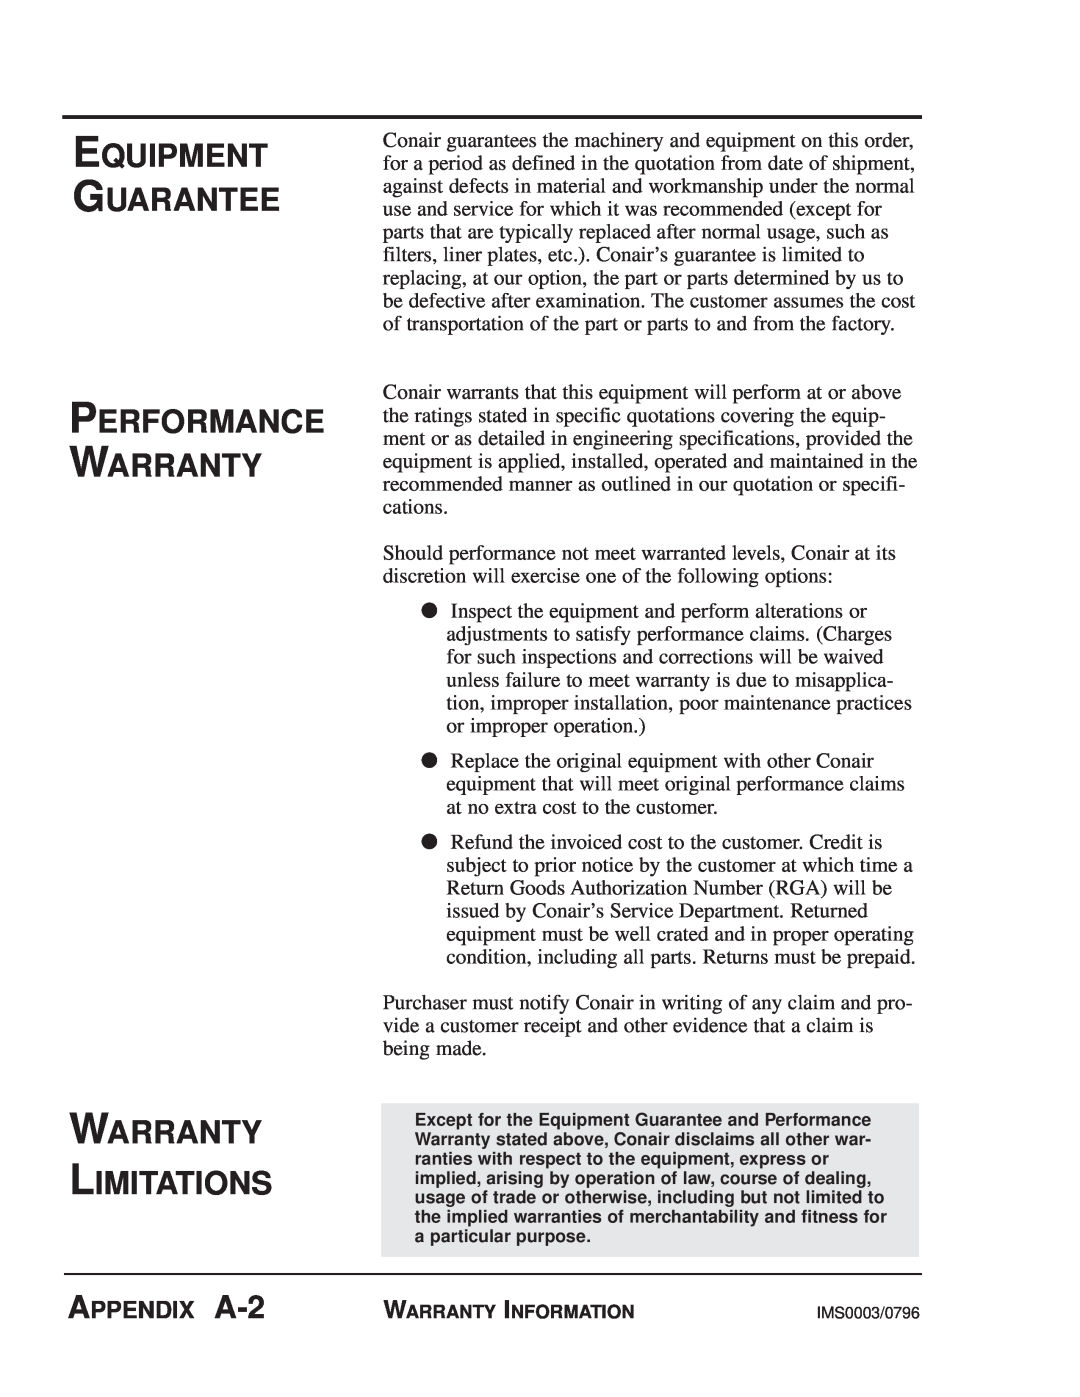 Conair MPA, MPW manual Equipment Guarantee Performance Warranty Warranty Limitations, APPENDIX A-2 